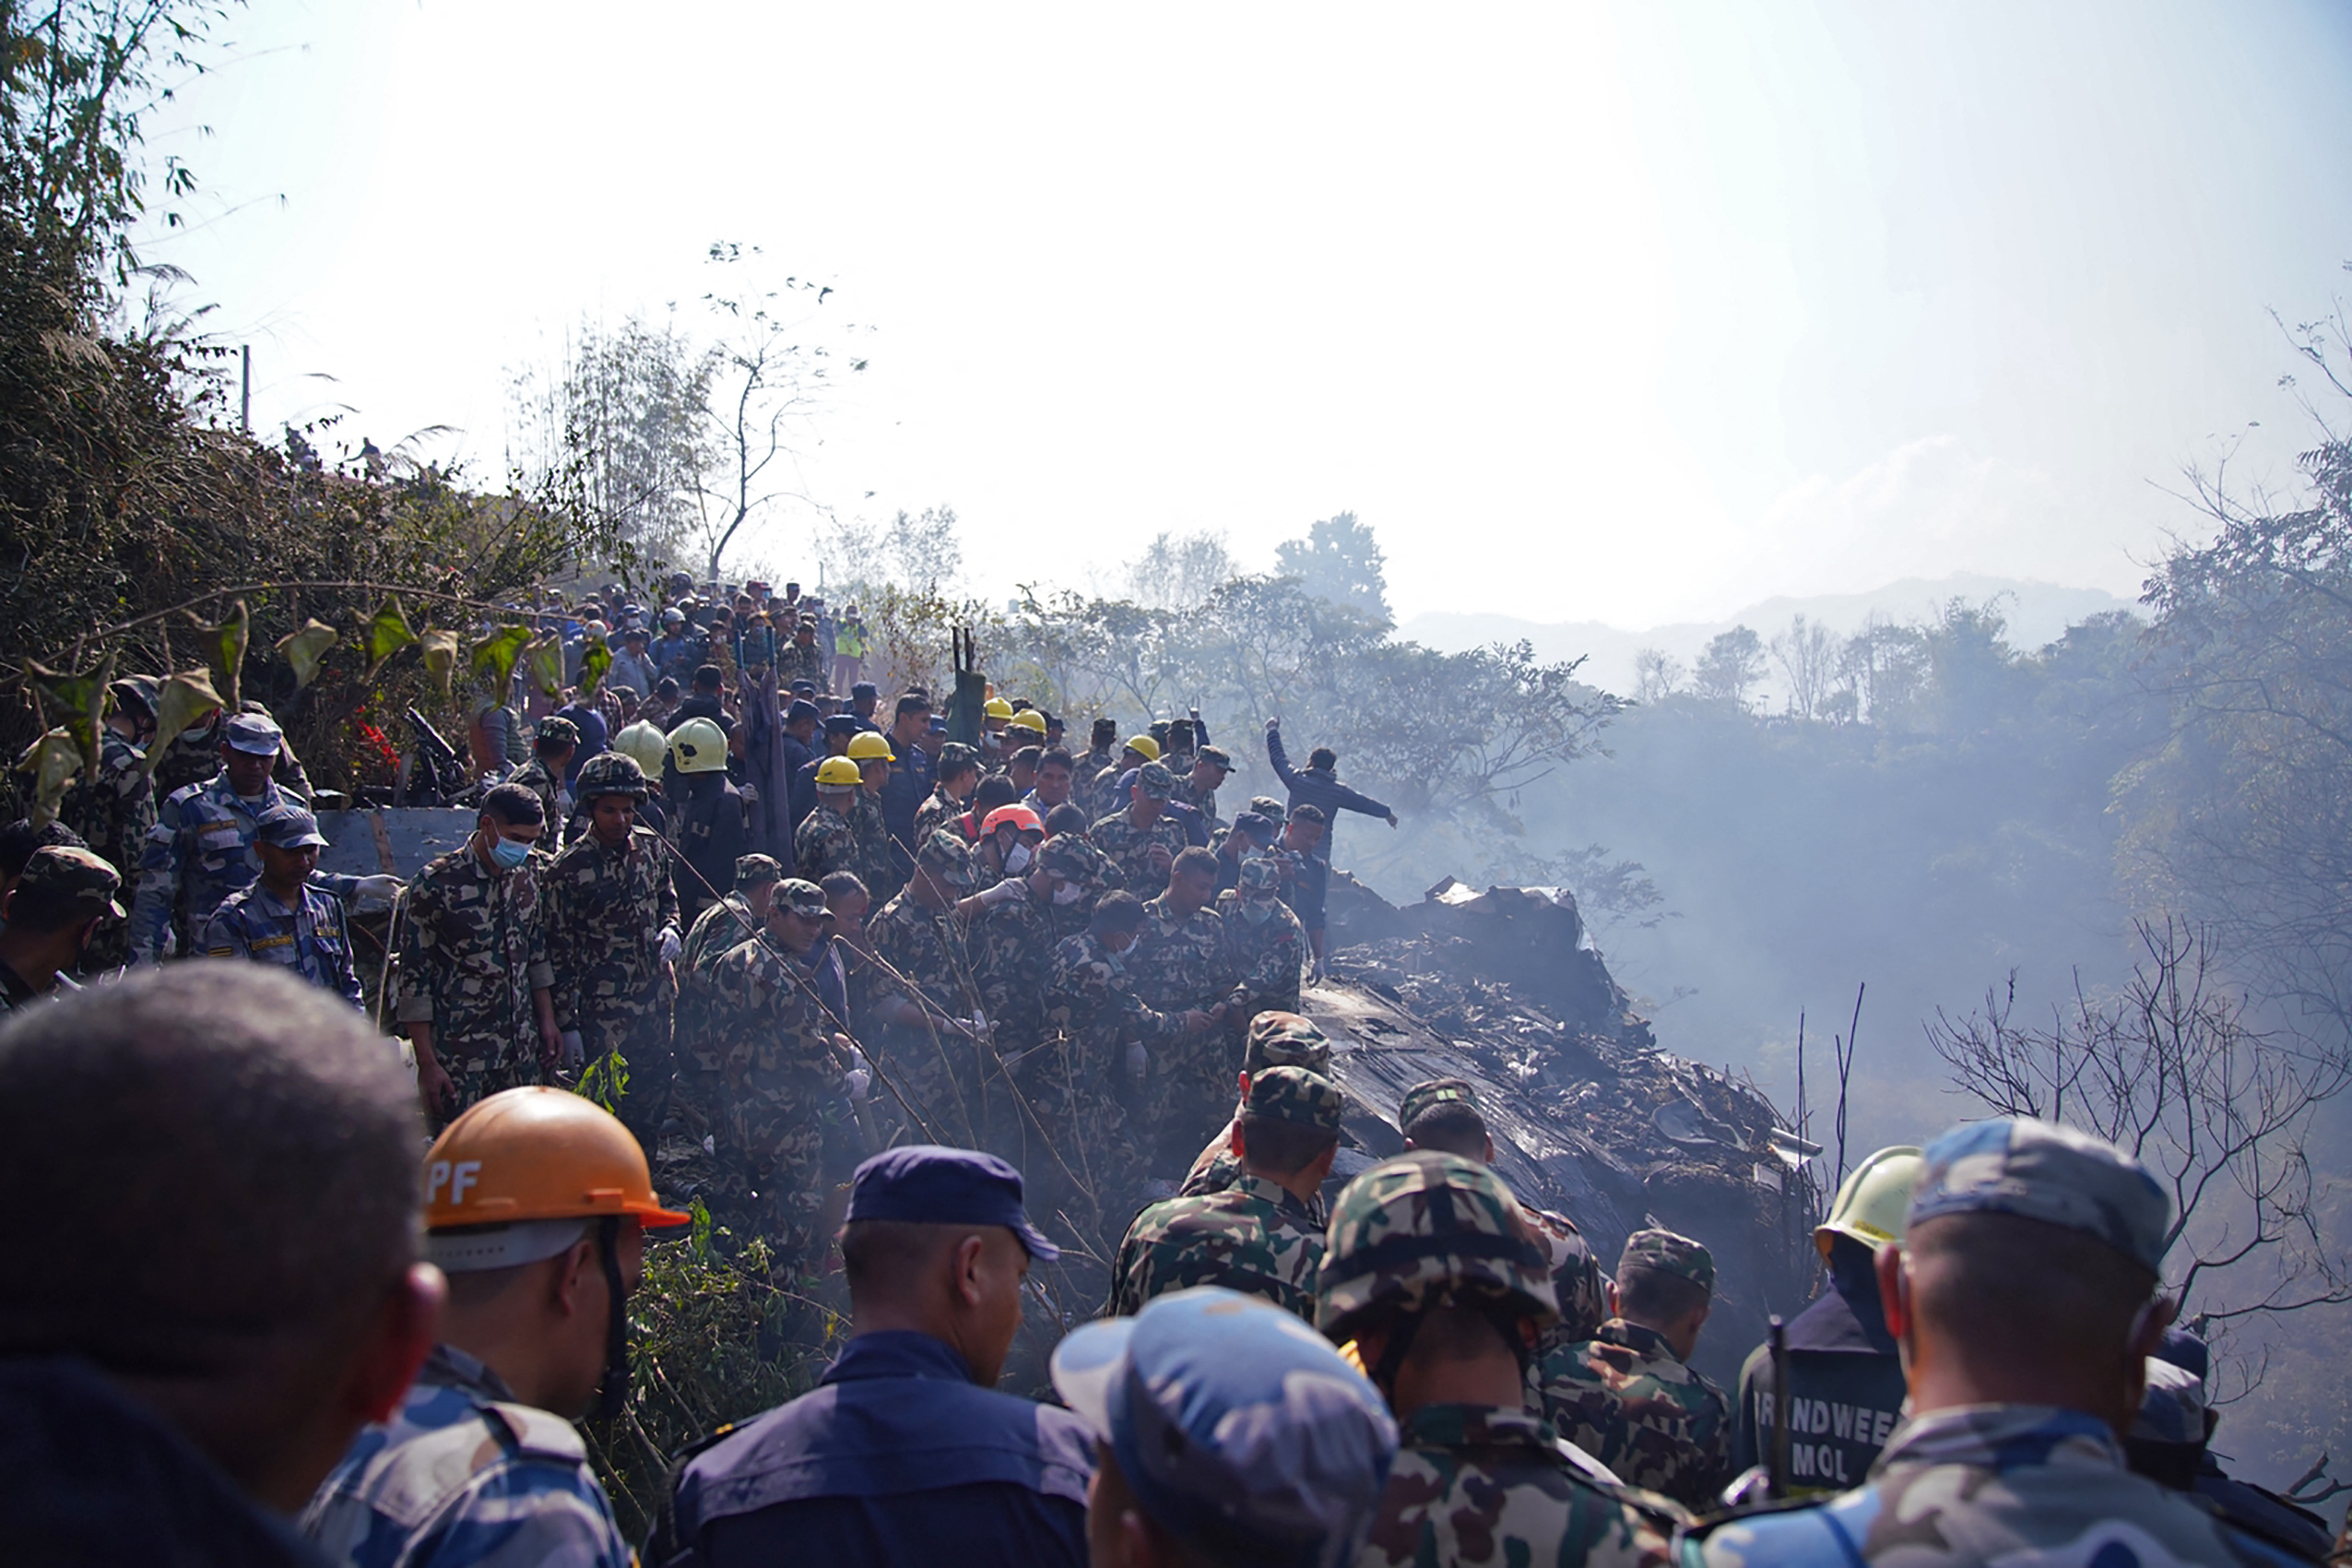 Los rescatistas continúan con las tareas en el lugar del accidente aéreo, sobre la ciudad de Pokhara en Nepal. Foto AFP/Yunish Gurung.